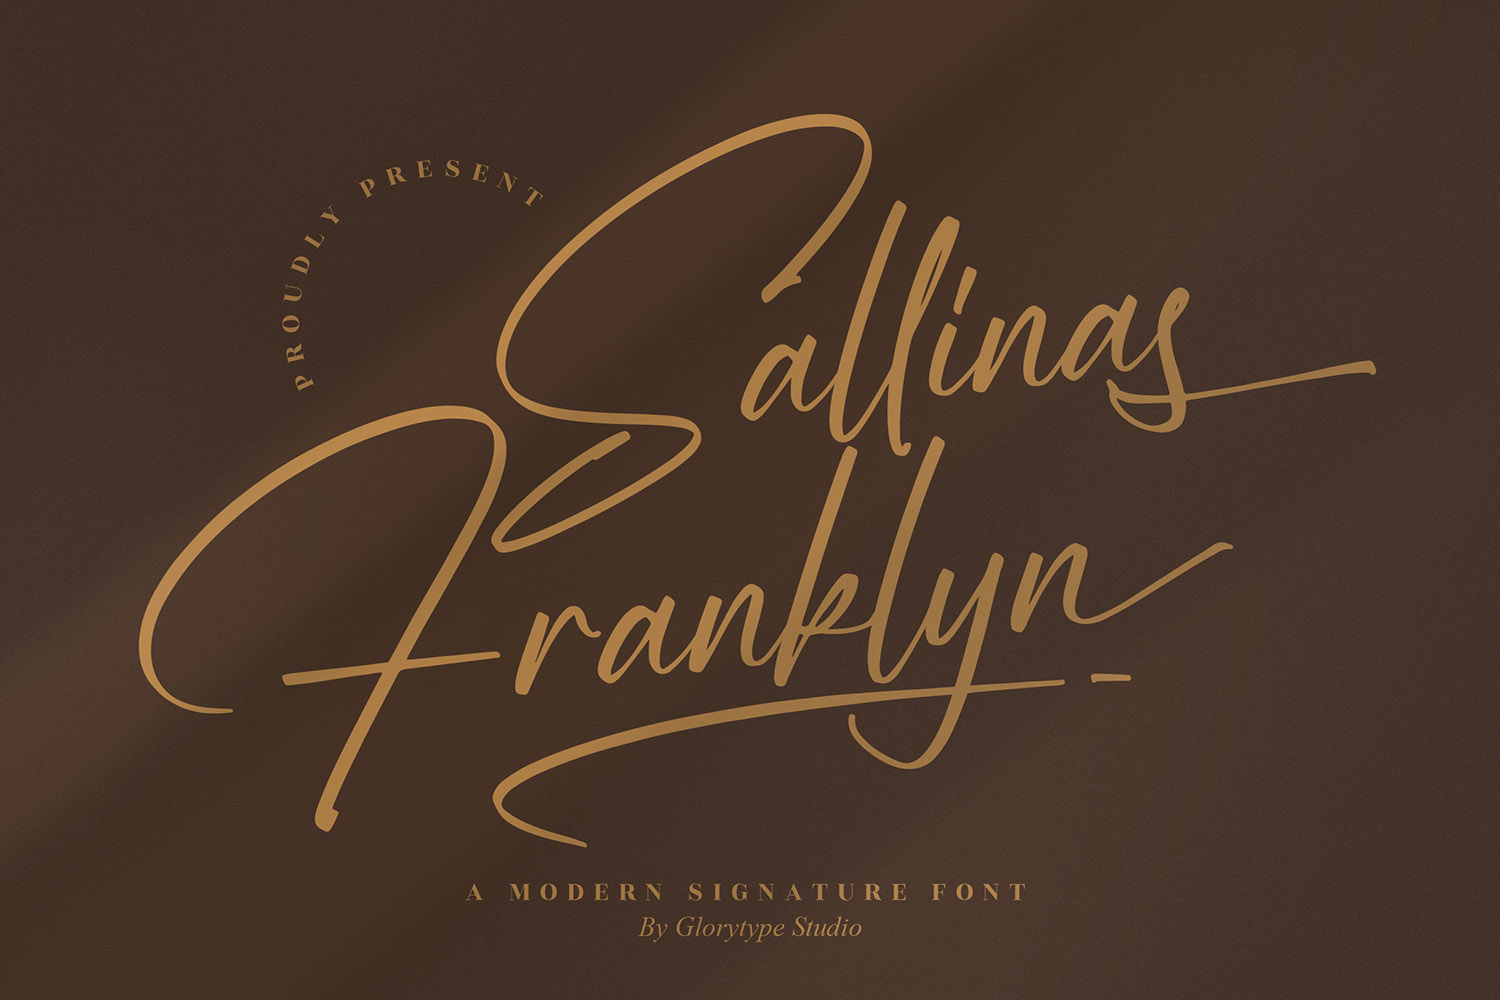 Sallinas Franklyn Free Font